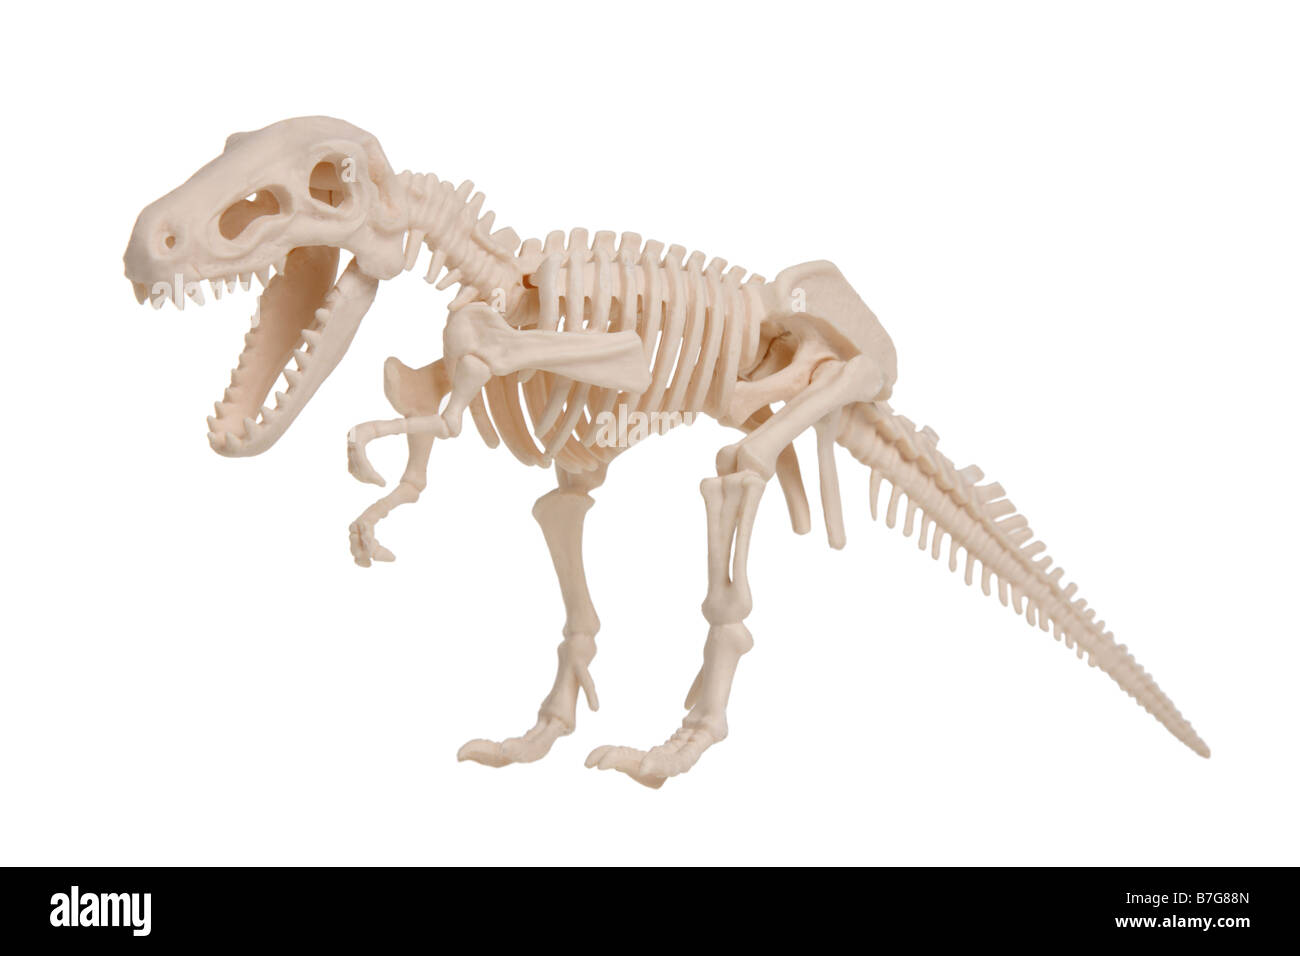 Scheletro di dinosauro modello di taglio su sfondo bianco Foto Stock